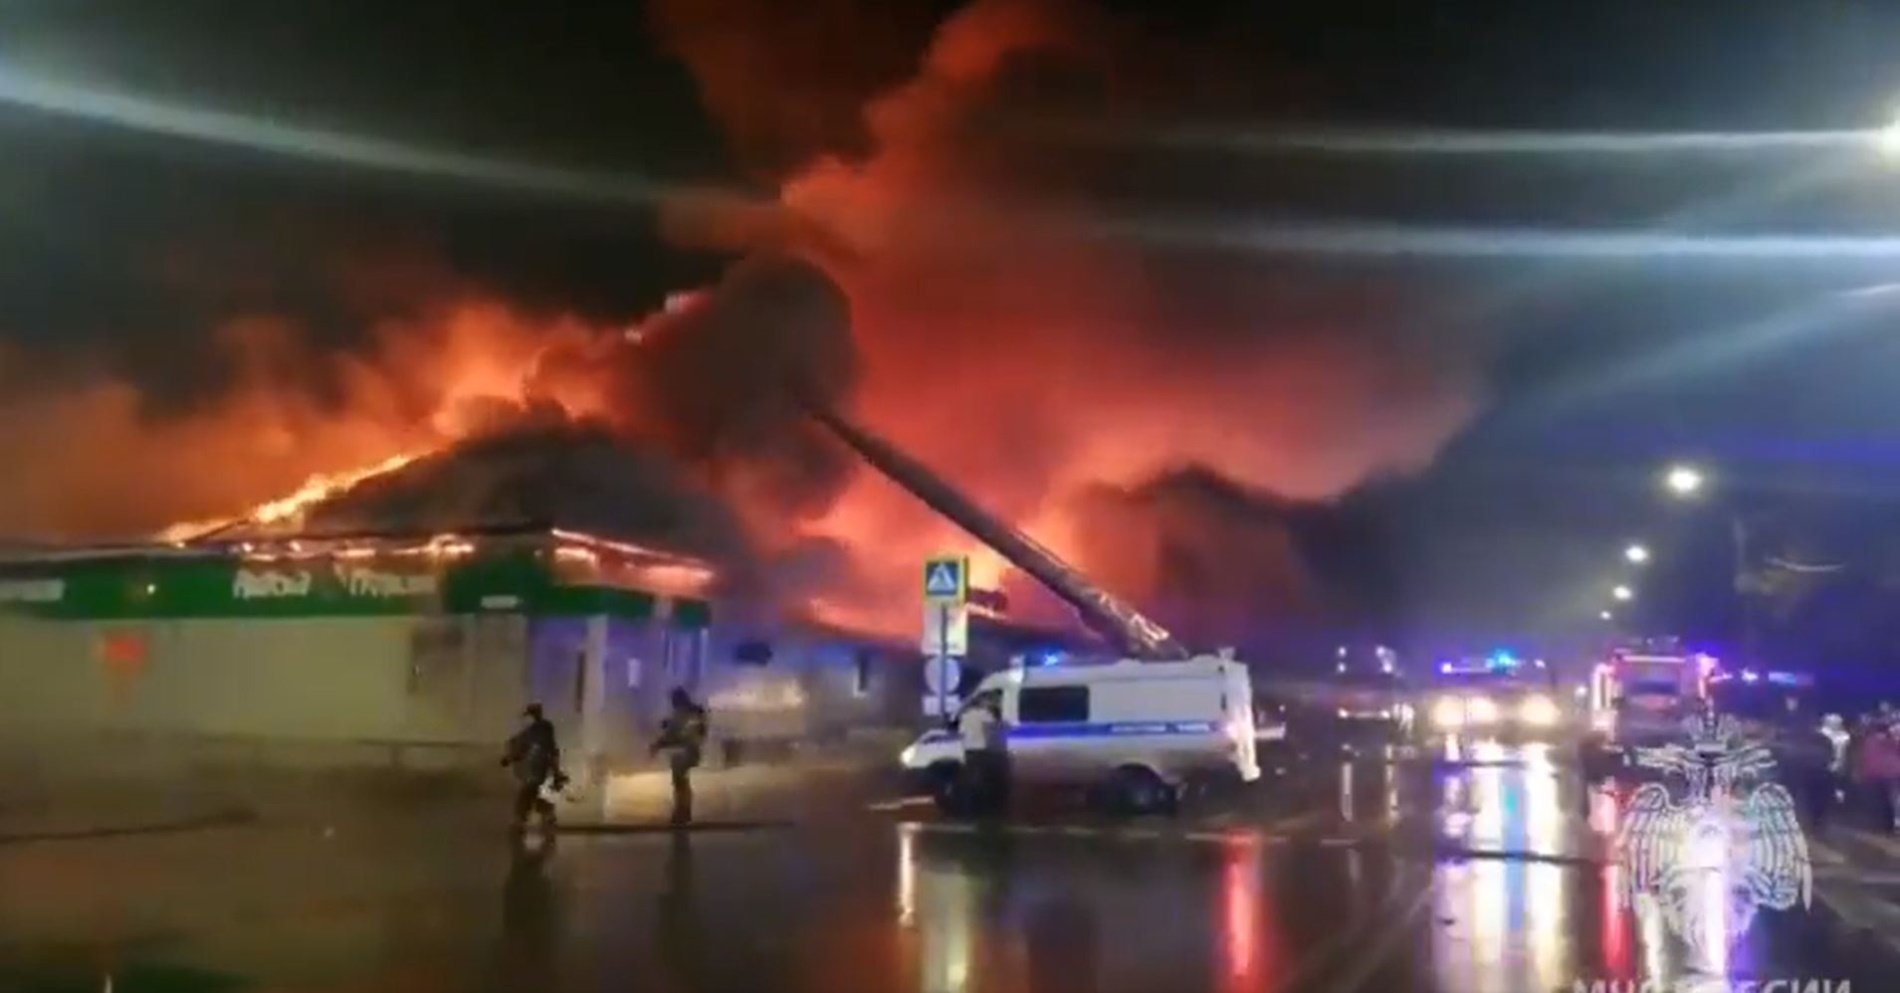 Almenys 15 persones mortes a causa d'un incendi en una cafeteria de la ciutat russa de Kostromà